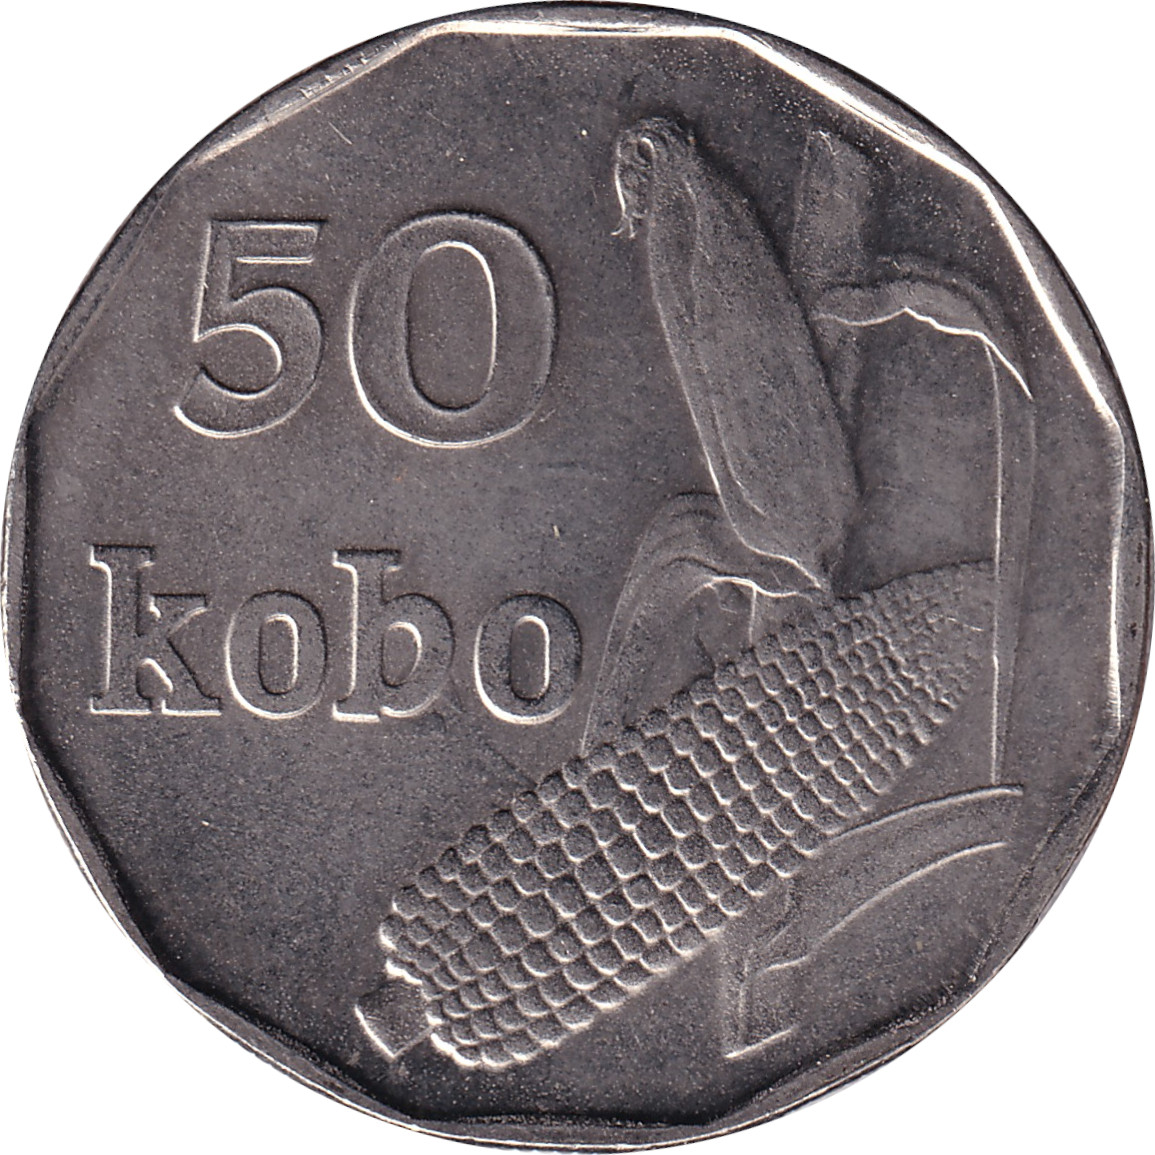 50 kobo - Epis de maïs - Ronde